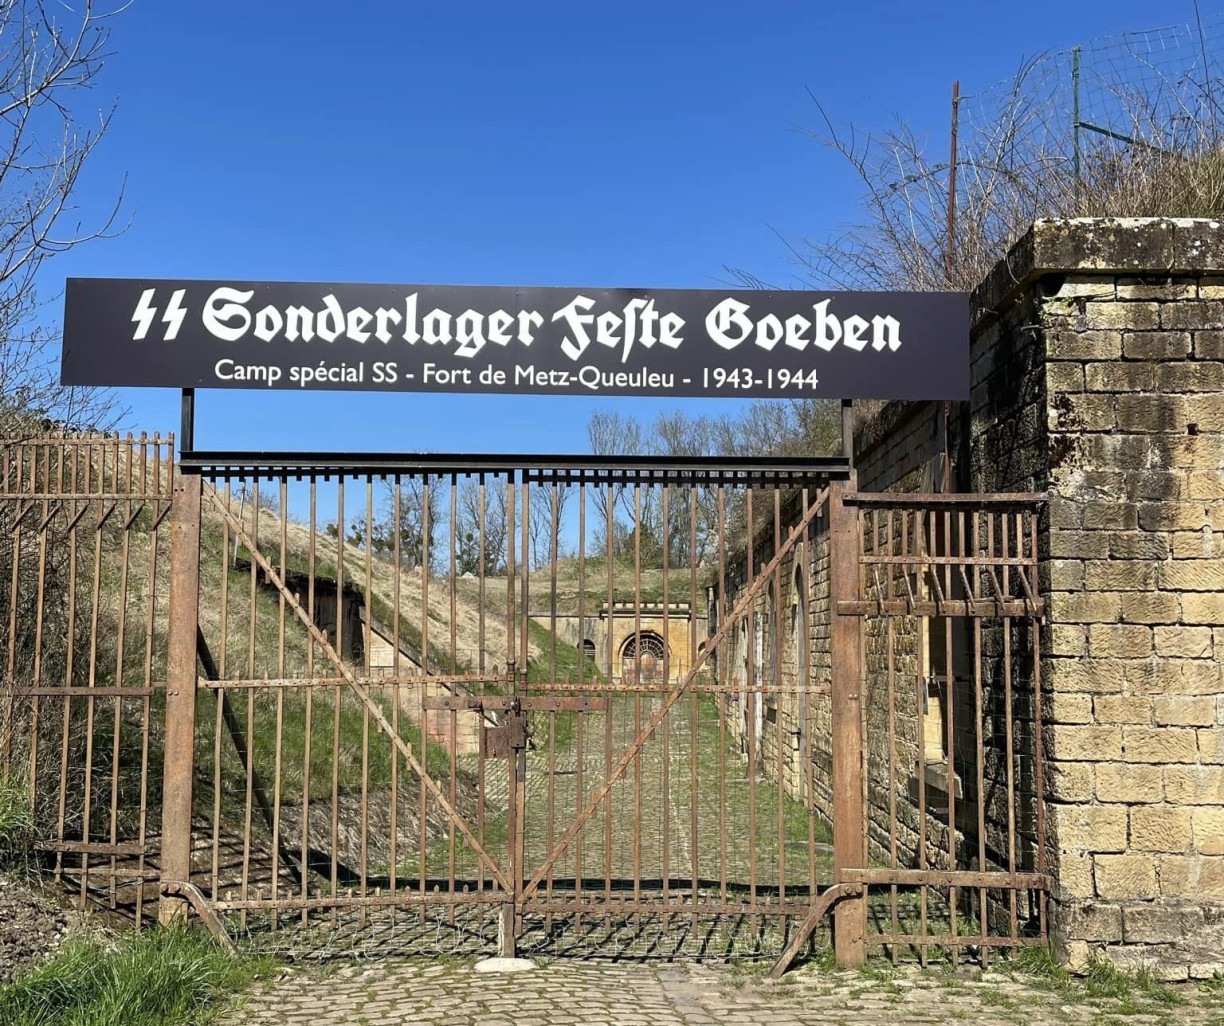 Le 12 octobre 1943 ouvrait le SS-Sonderlager Feste Goeben ou fort de Queuleu.